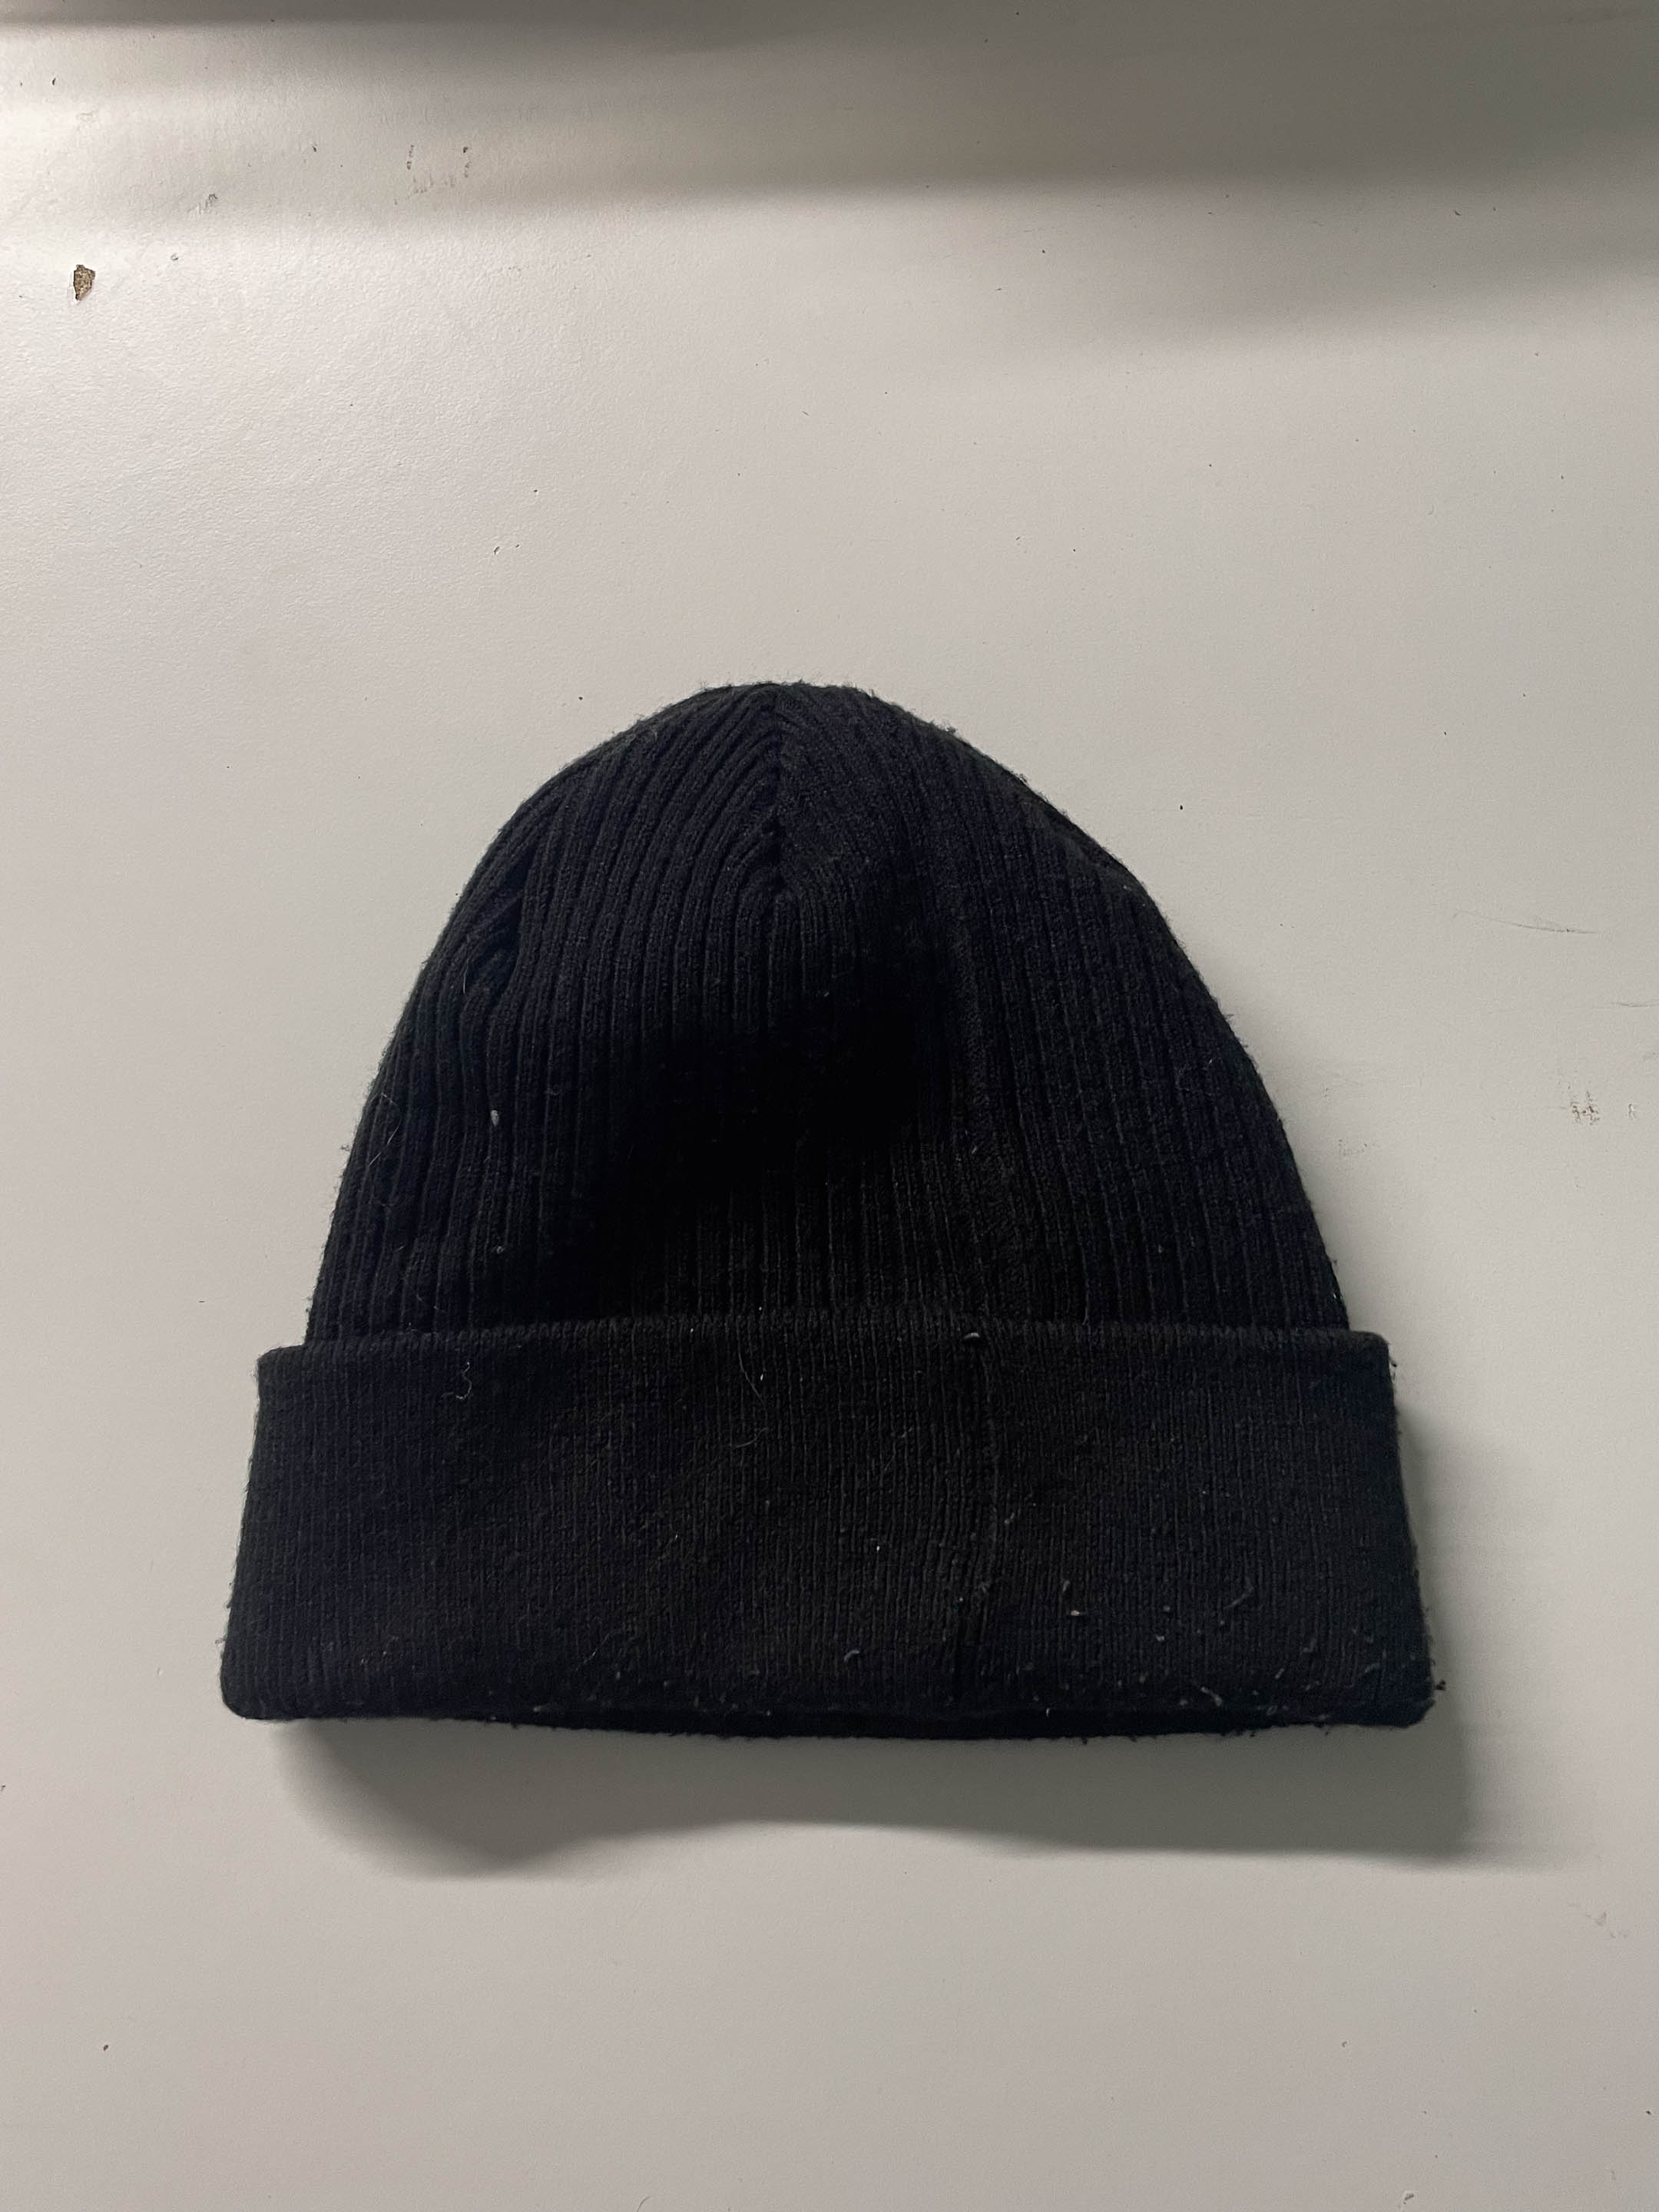 Vintage black winter beanie hat